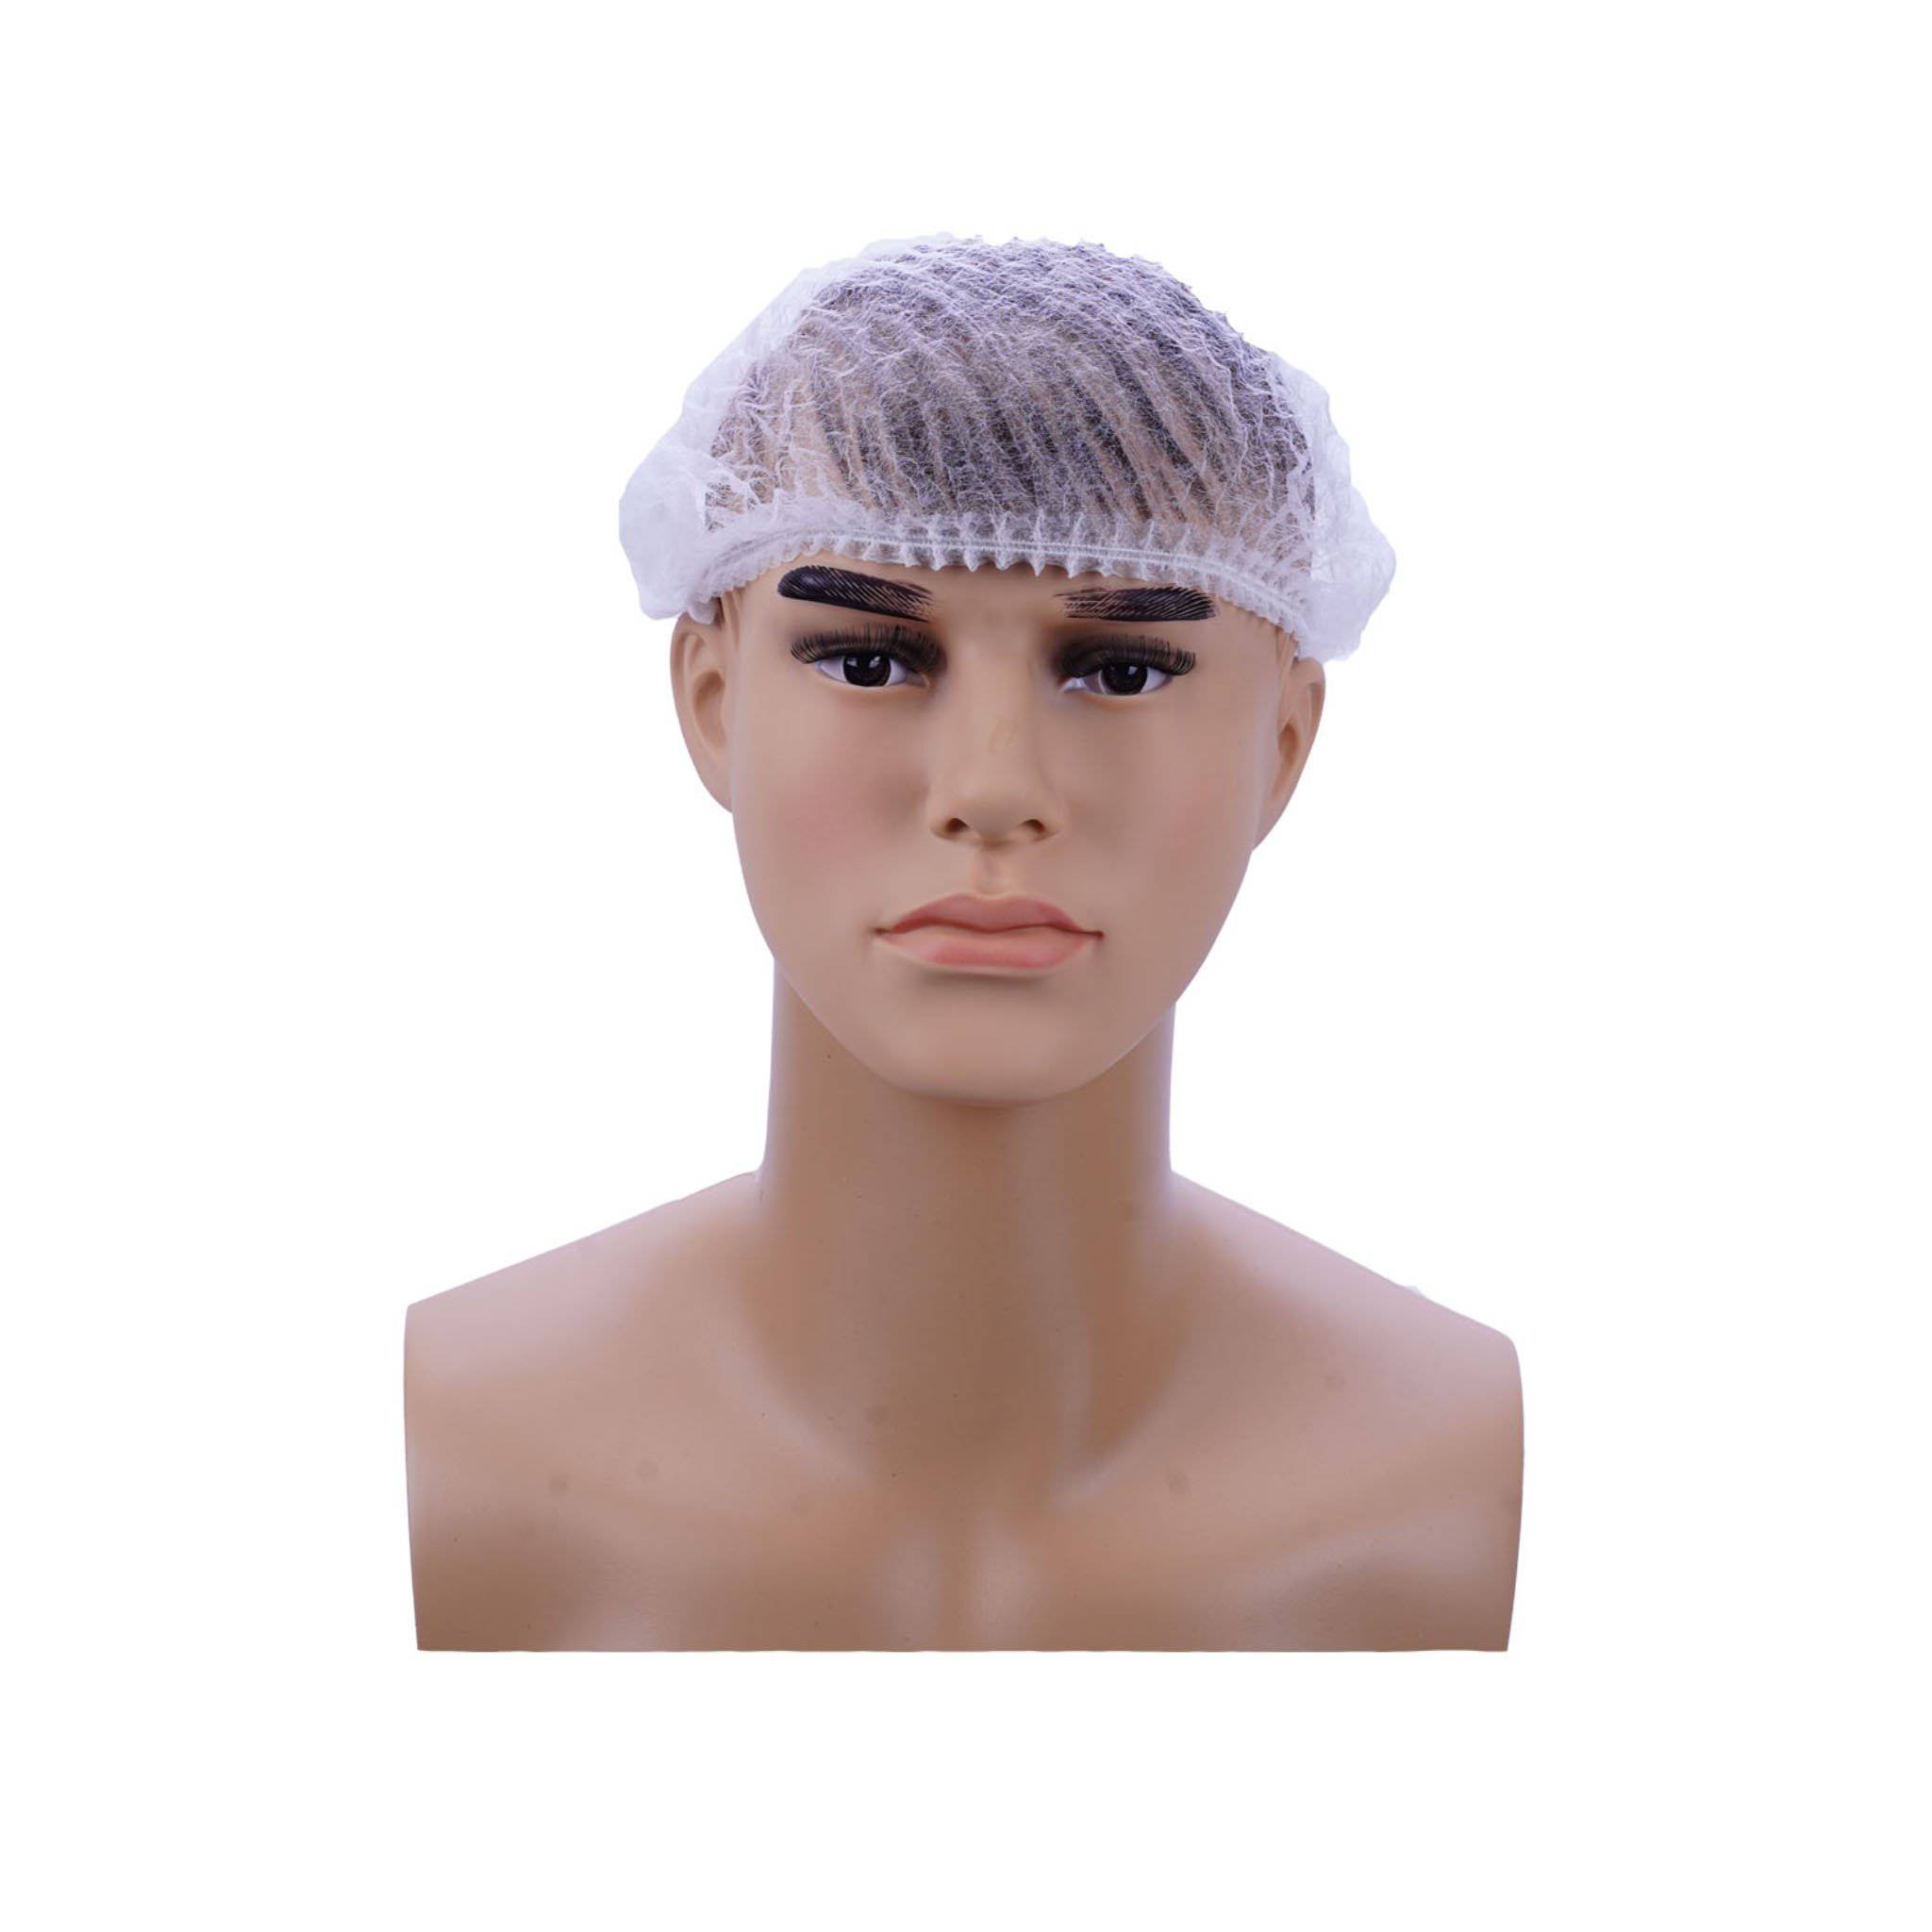 Hair Net (Bouffant) White Color - Hotpack 